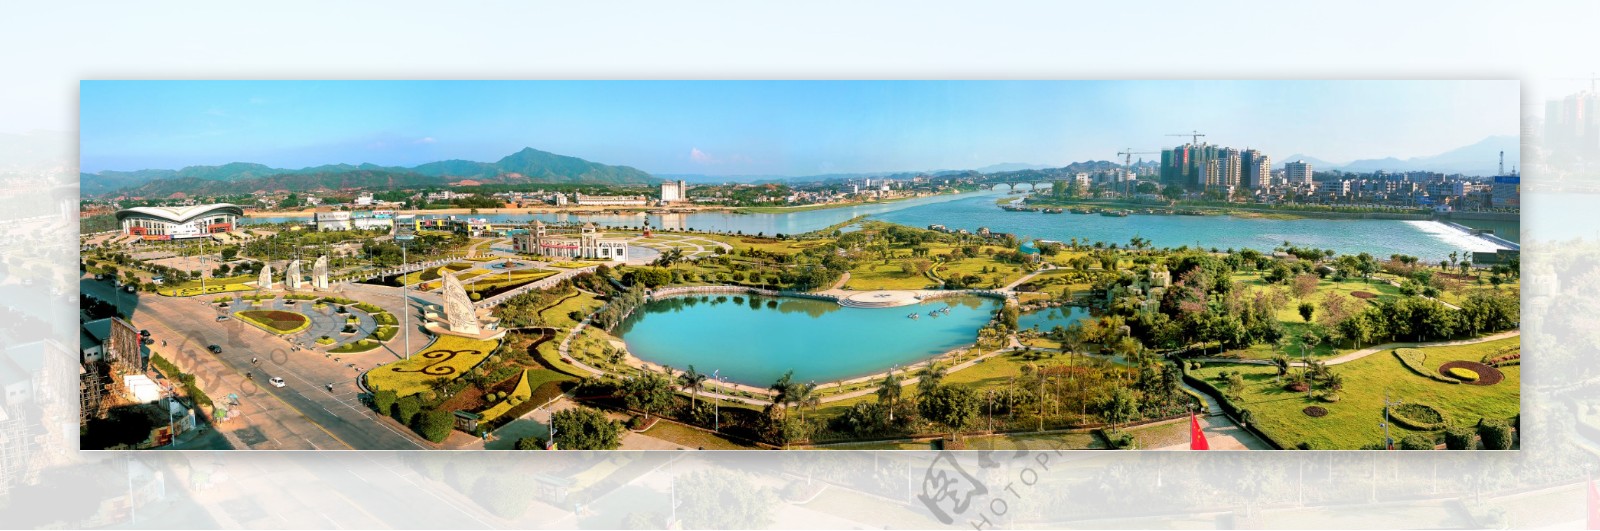 河源文化广场图片